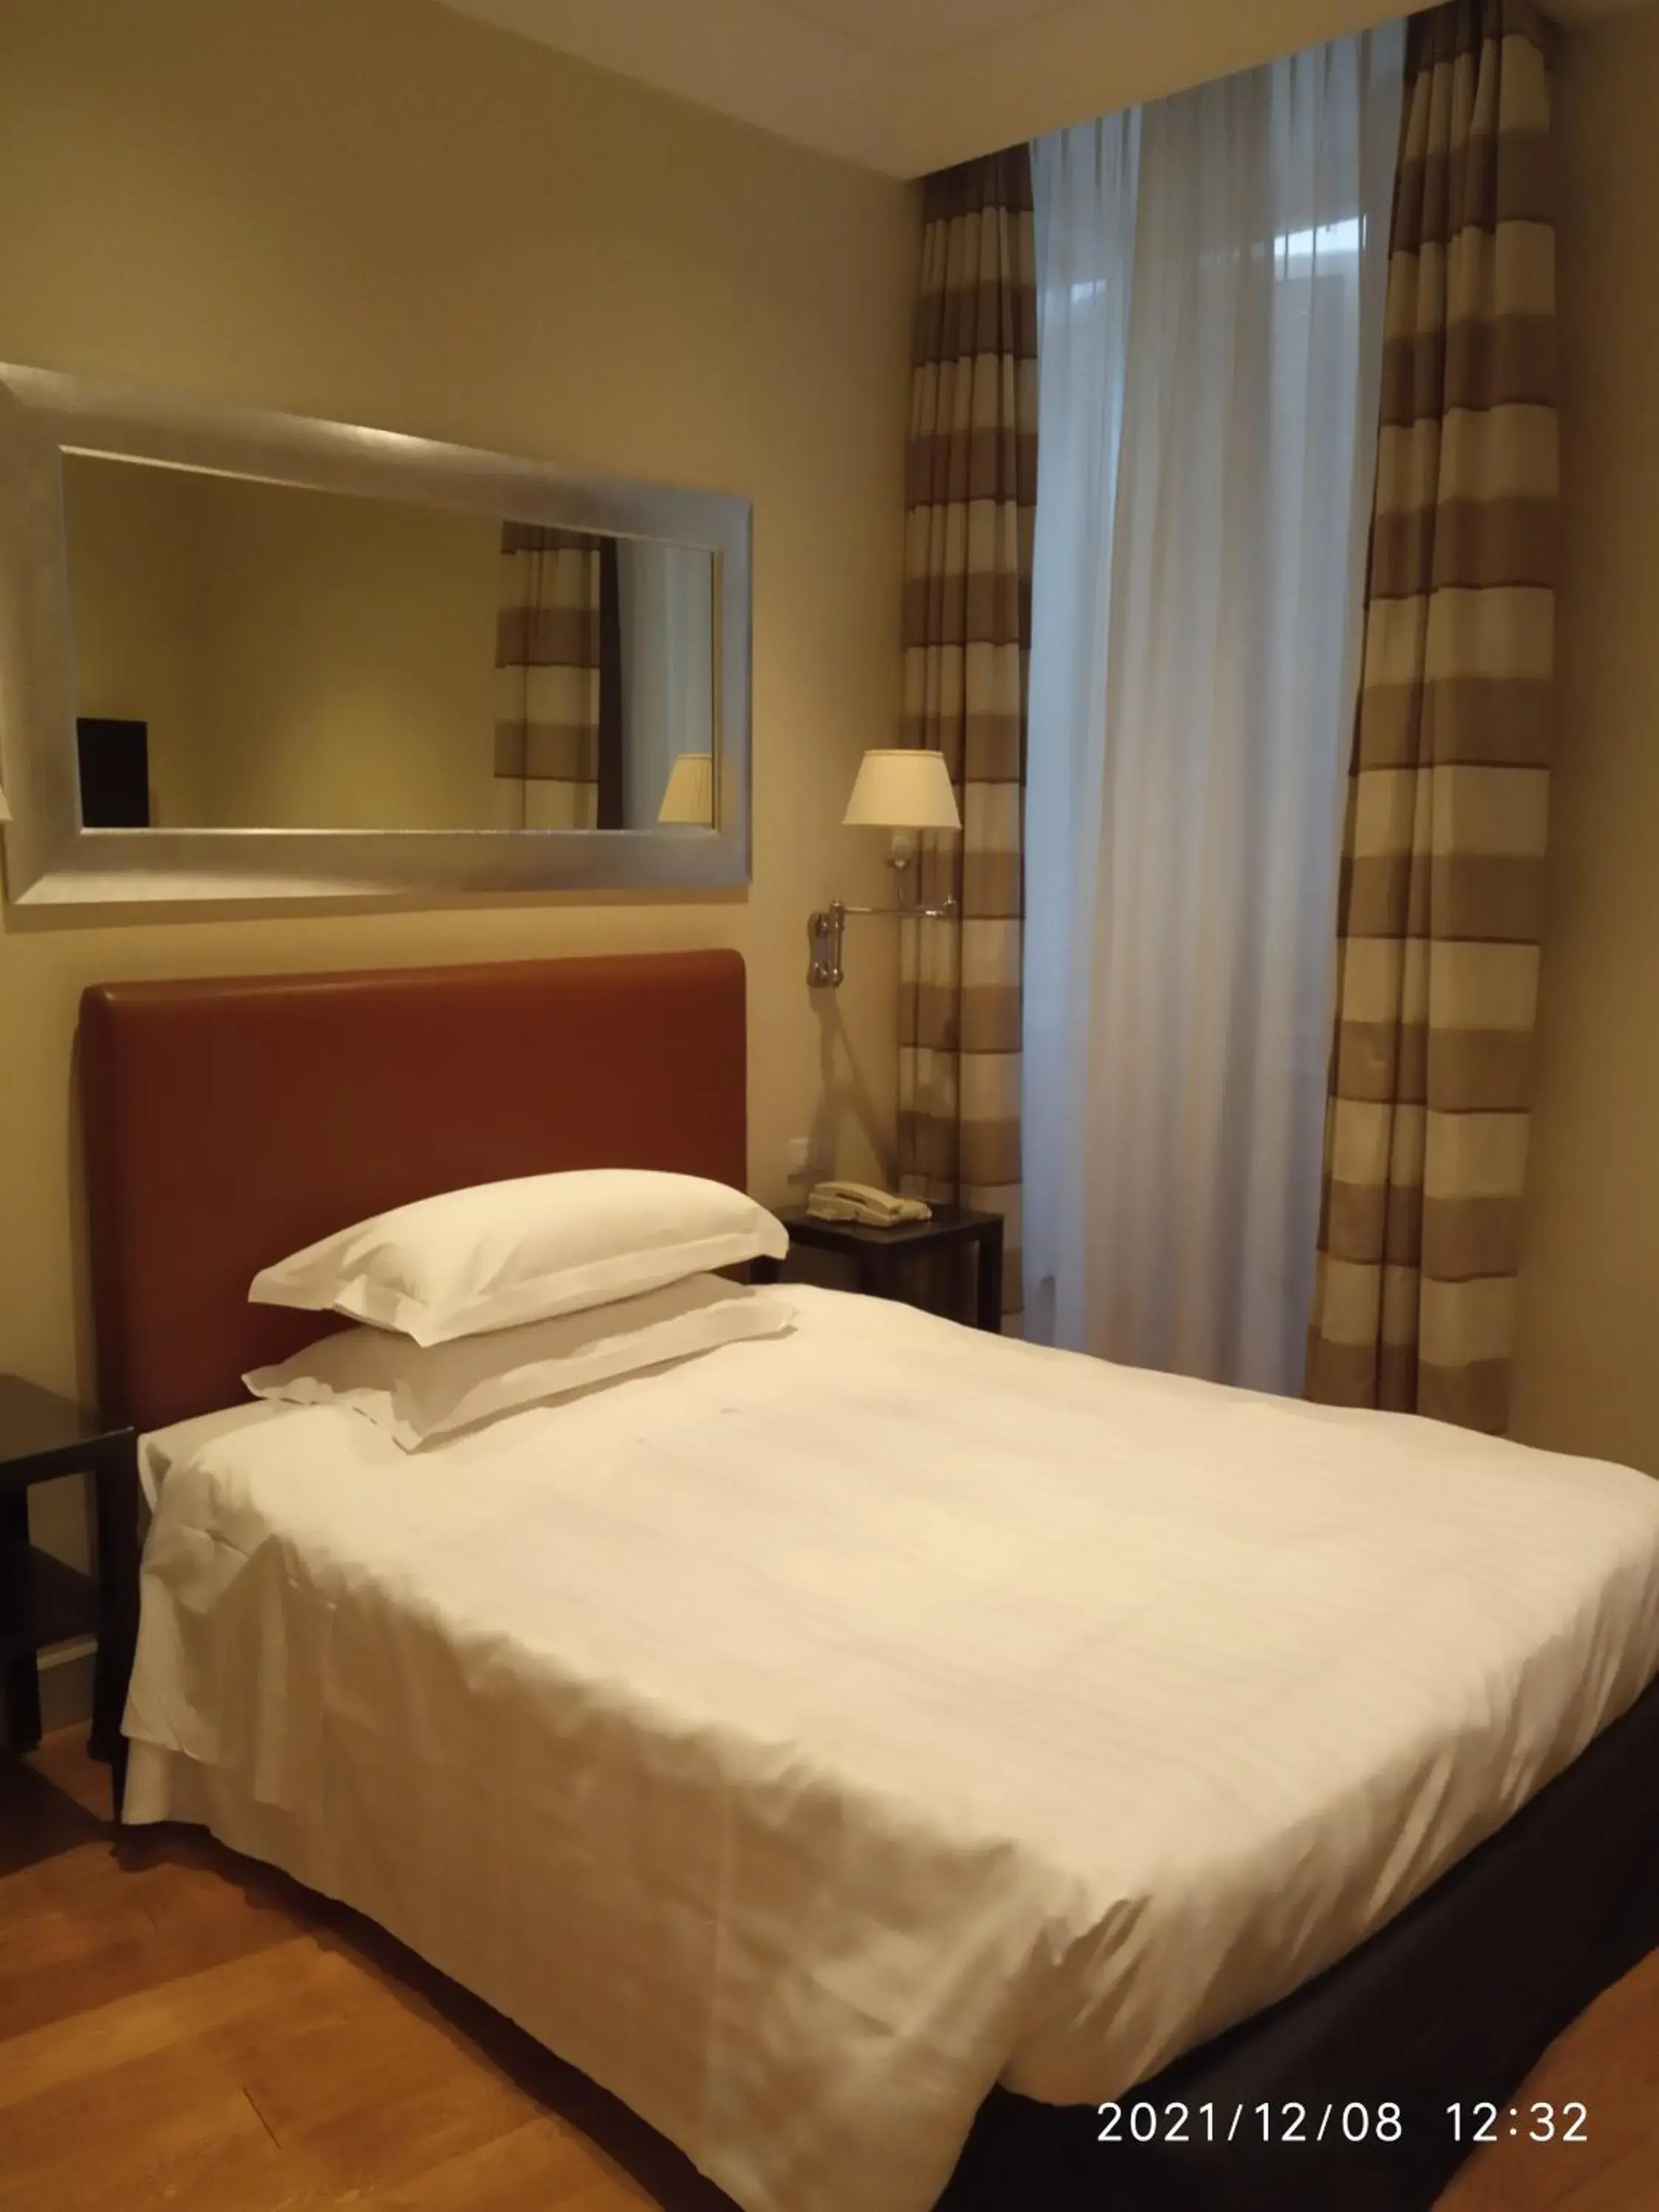 Bed in Hotel Albergo Santa Chiara